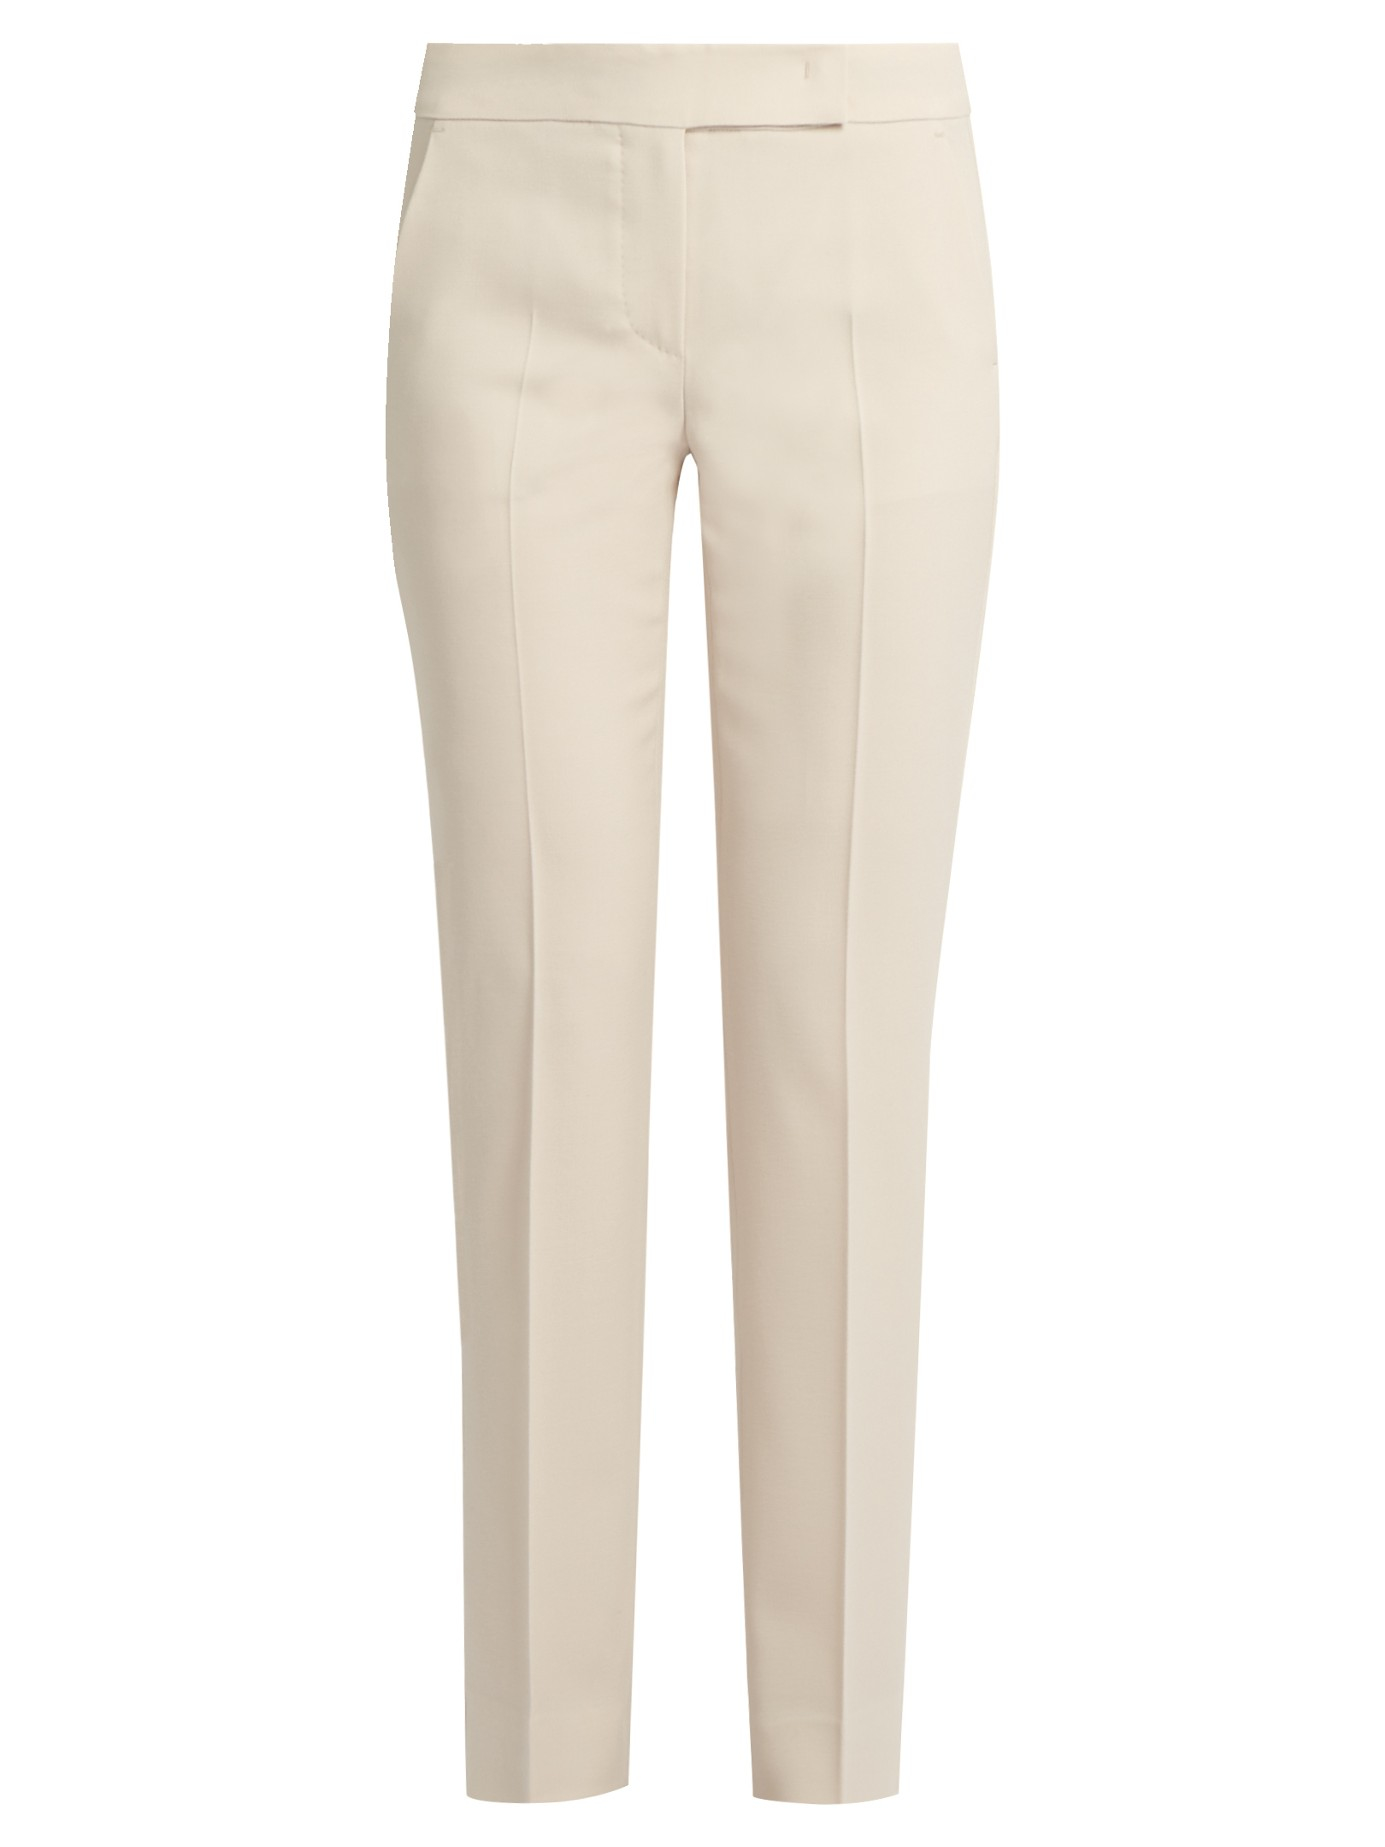 Lyst - Max Mara Tela Trousers in White